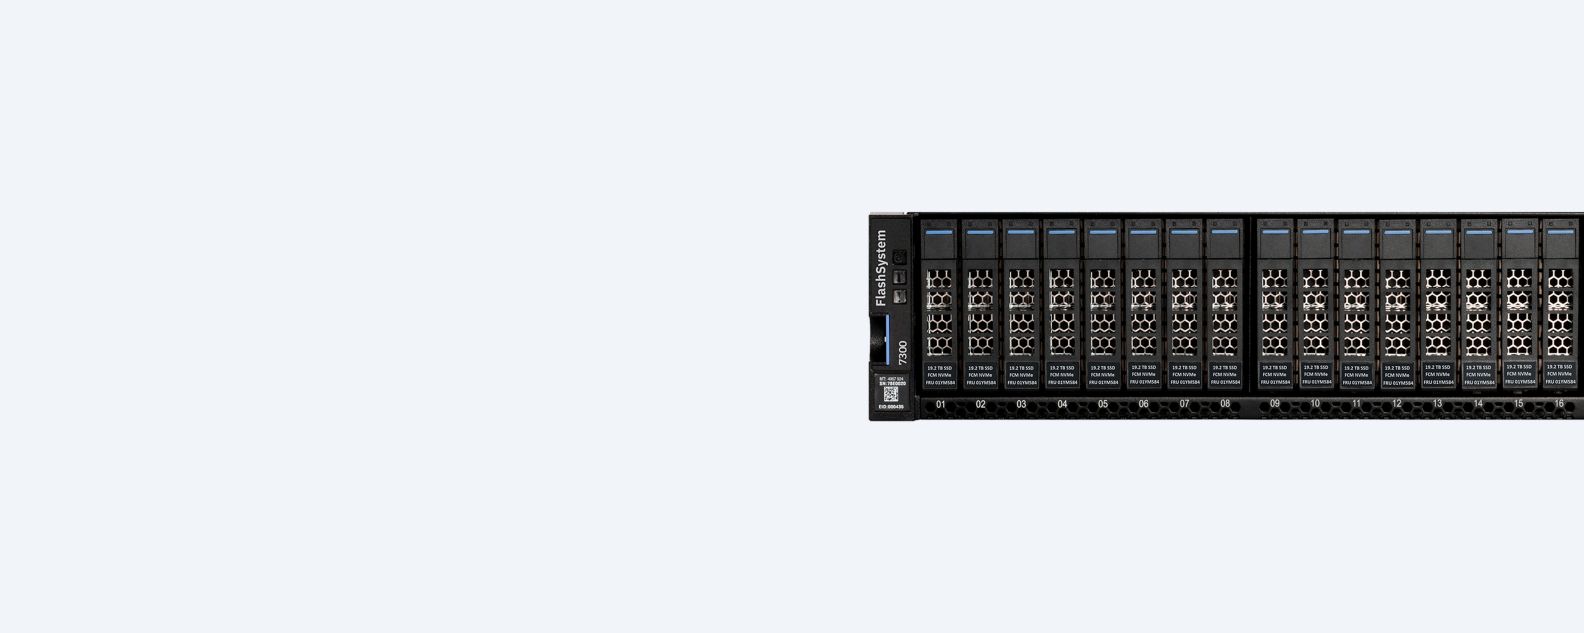 IBM Storage FlashSystem 7300 product